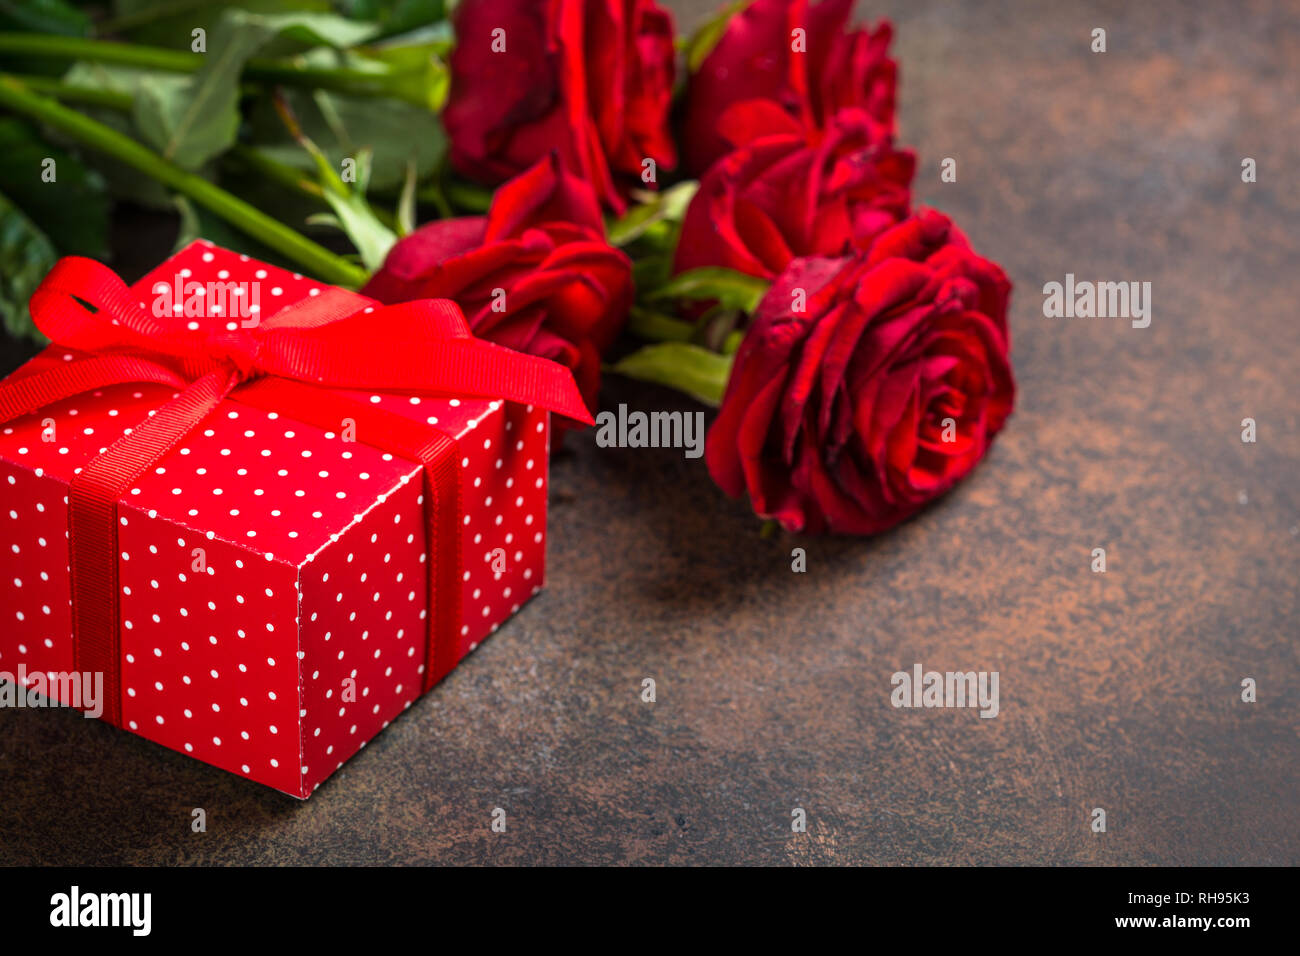 Rote Rosen Blume Und Geschenk Box Auf Dunklen Tisch Aus Stein